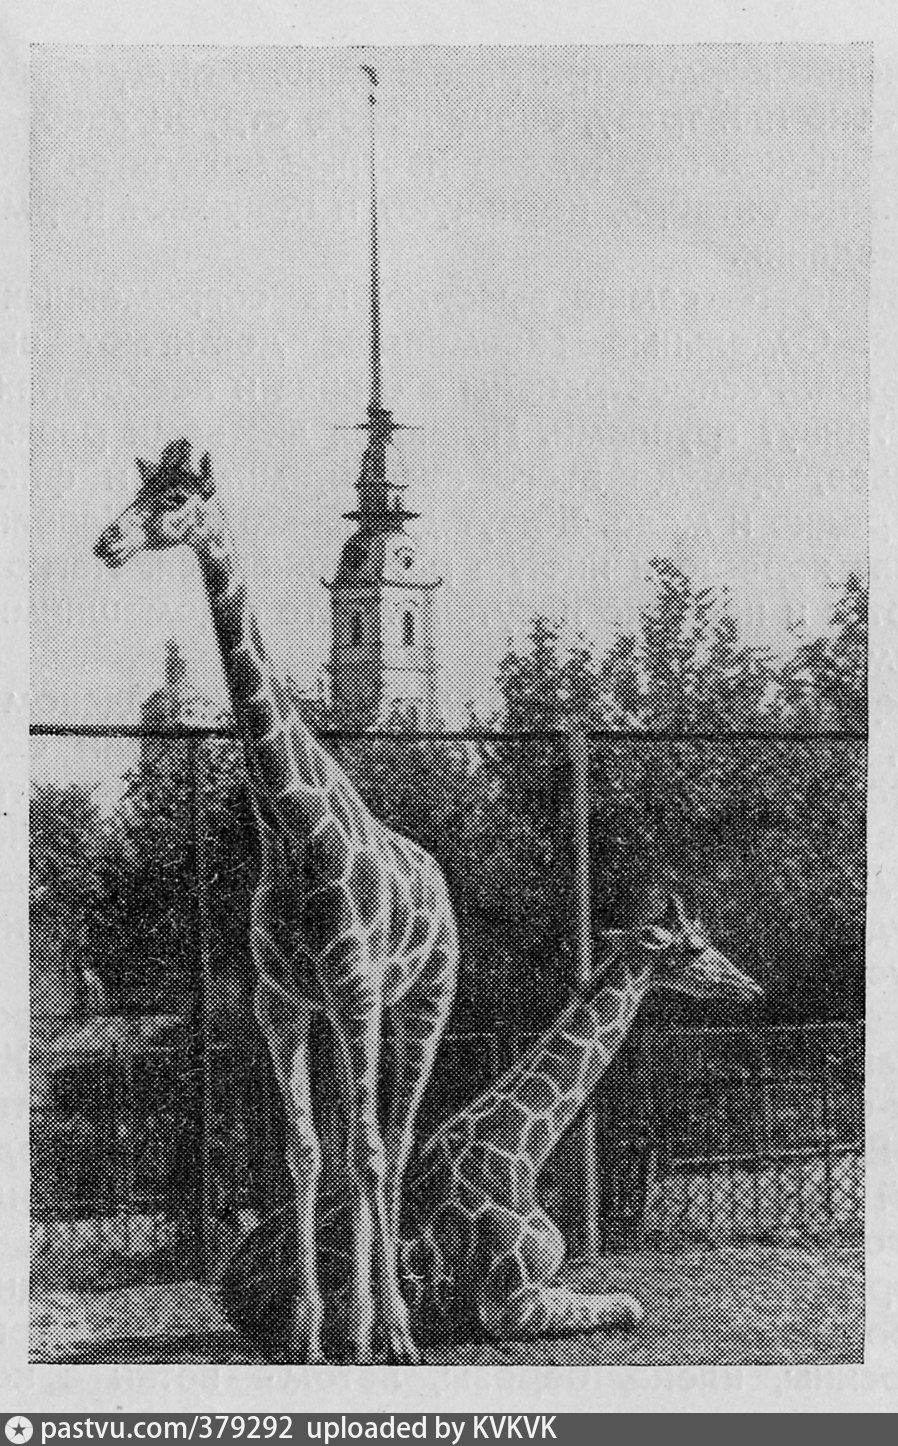 Зоологический сад в Санкт-Петербурге в 19 веке